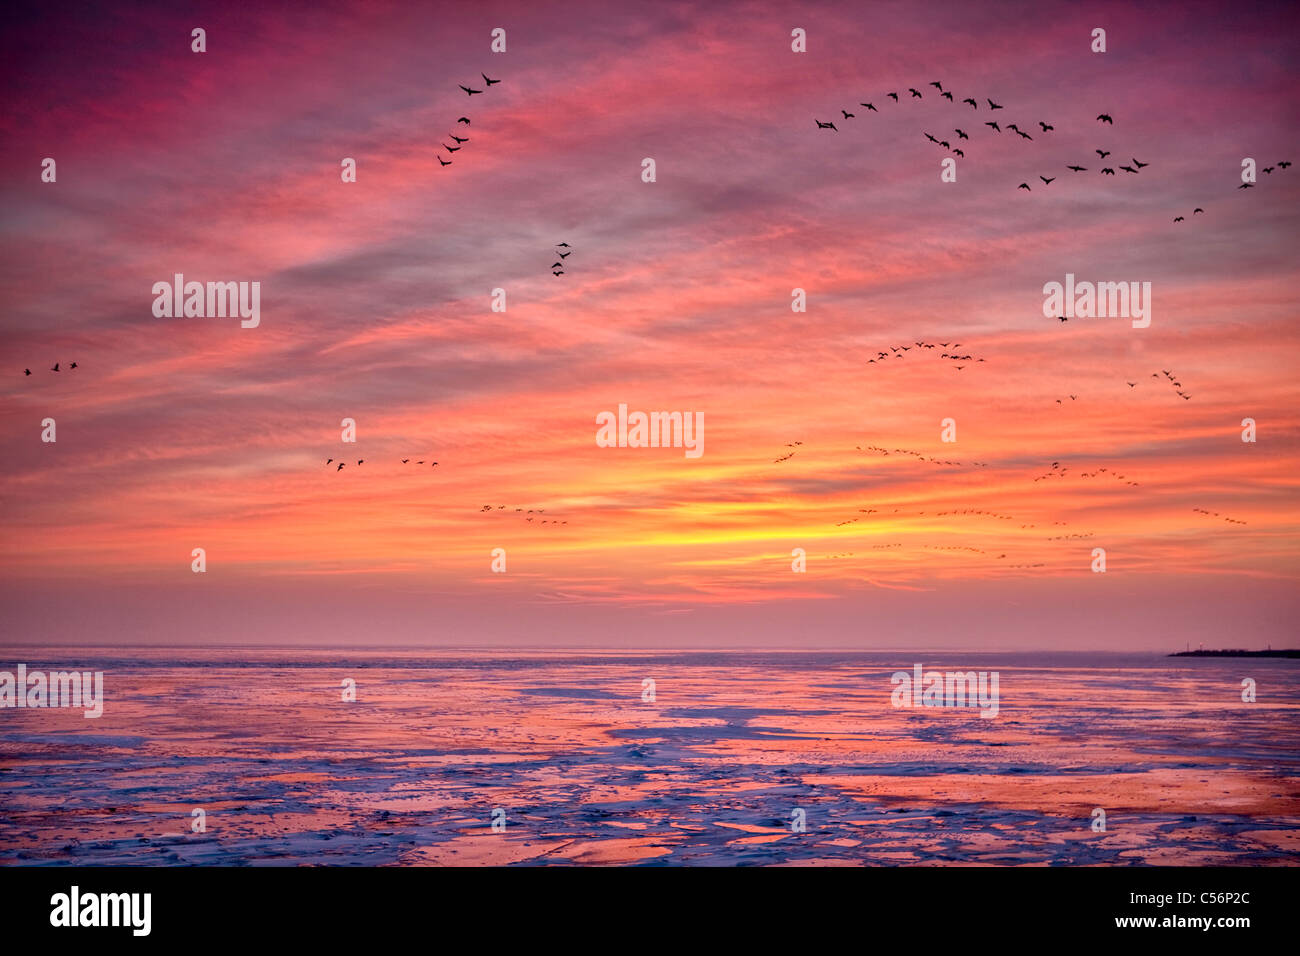 Niederlande, Oosterdijk, Winter, Schnee, Blick auf gefrorenen See IJsselmeer genannt. Sunrise. Gänse auf Nahrungssuche. Stockfoto